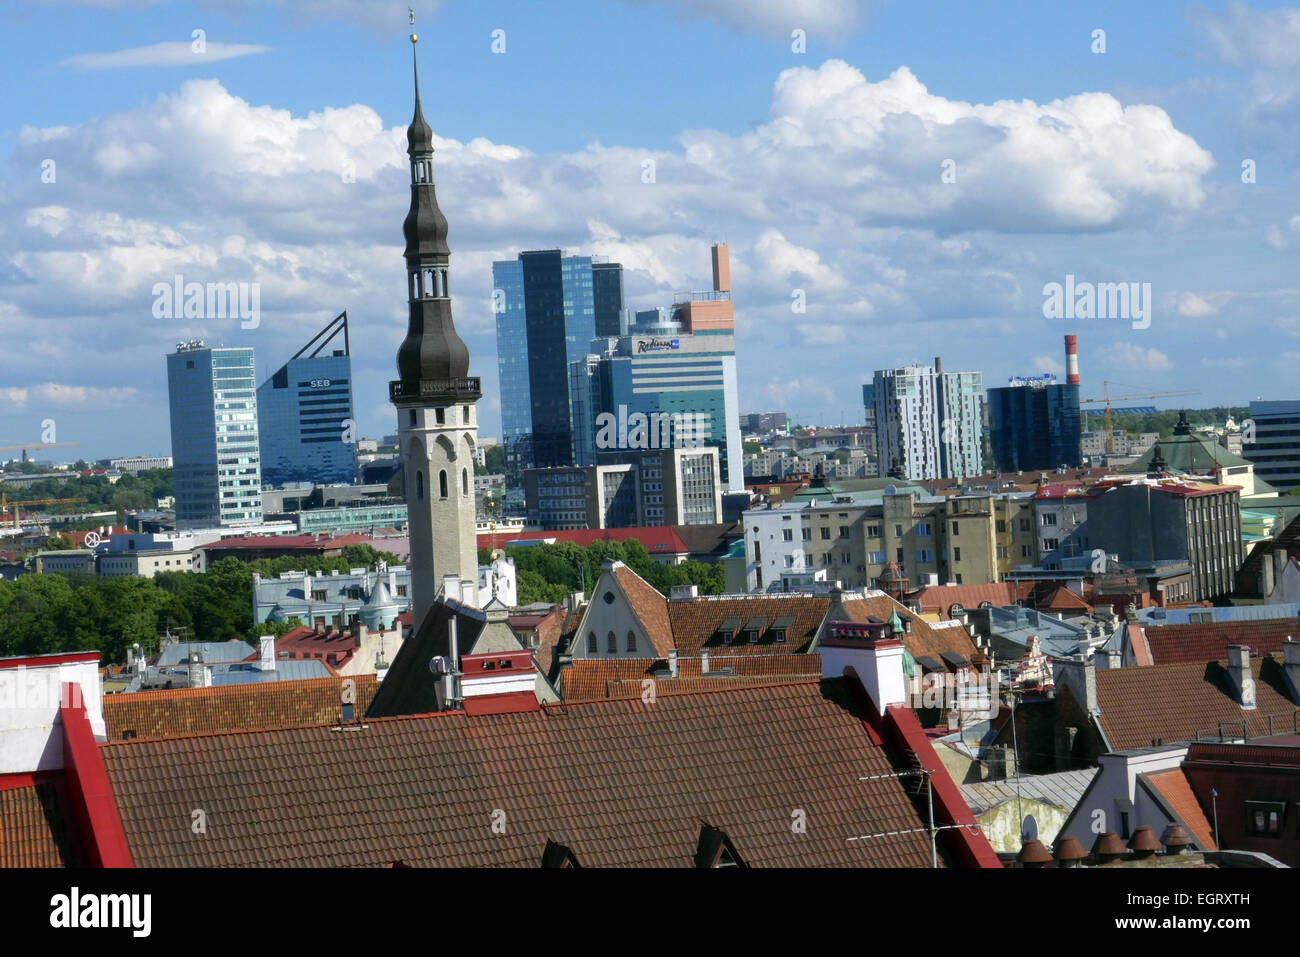 Lo Skyline di Tallinn in Estonia con una guglia della vecchia città contro i moderni grattacieli Foto Stock